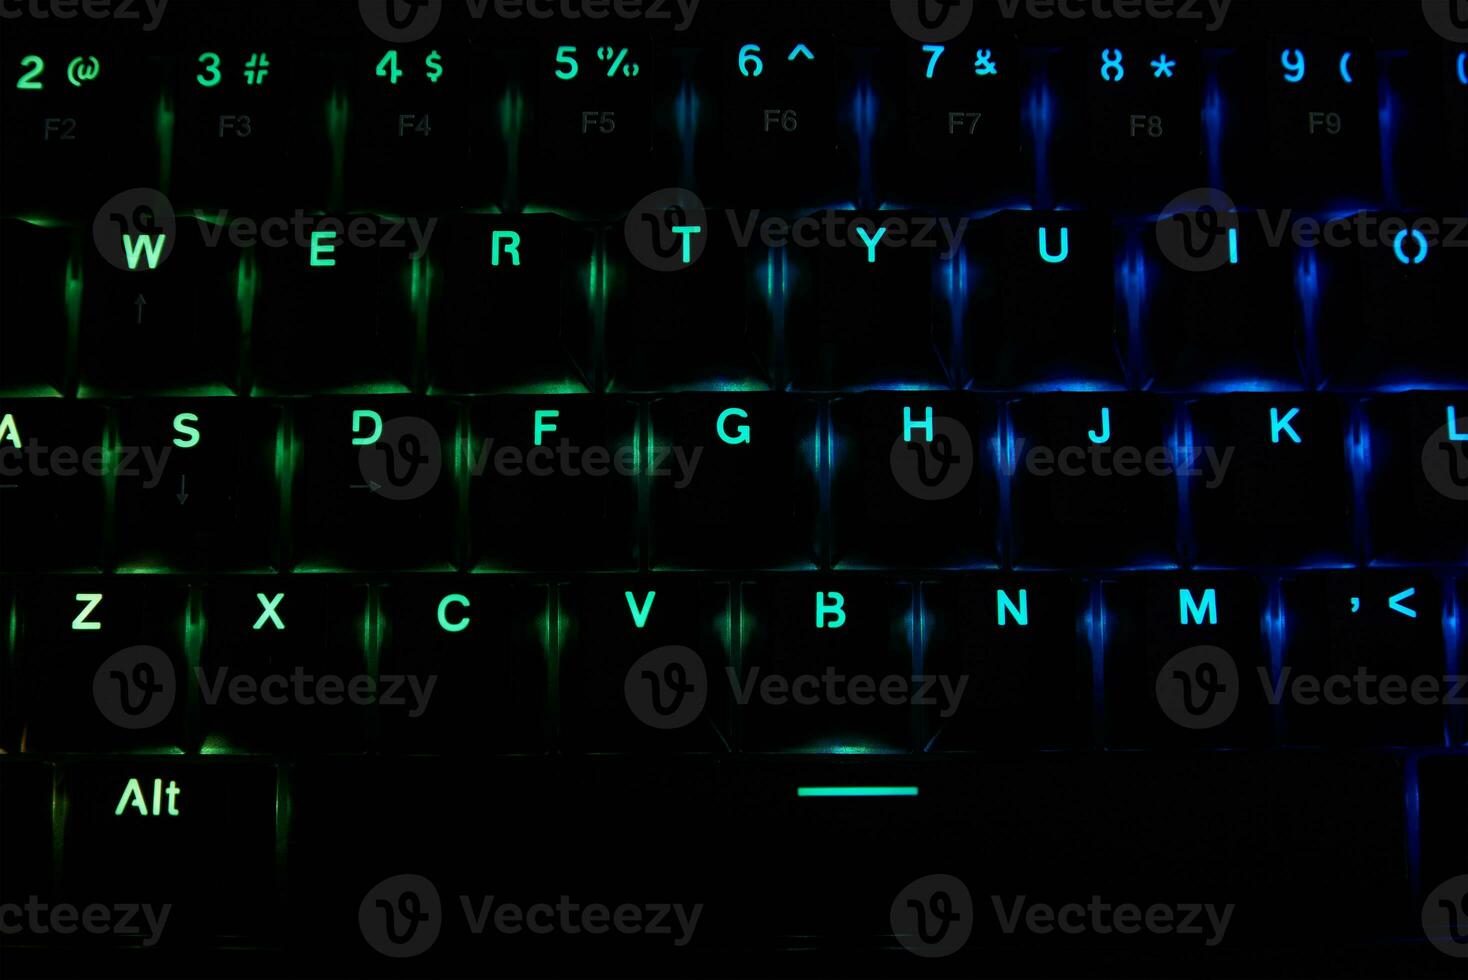 RGB-Gaming-Tastatur auf dunklem Hintergrund foto